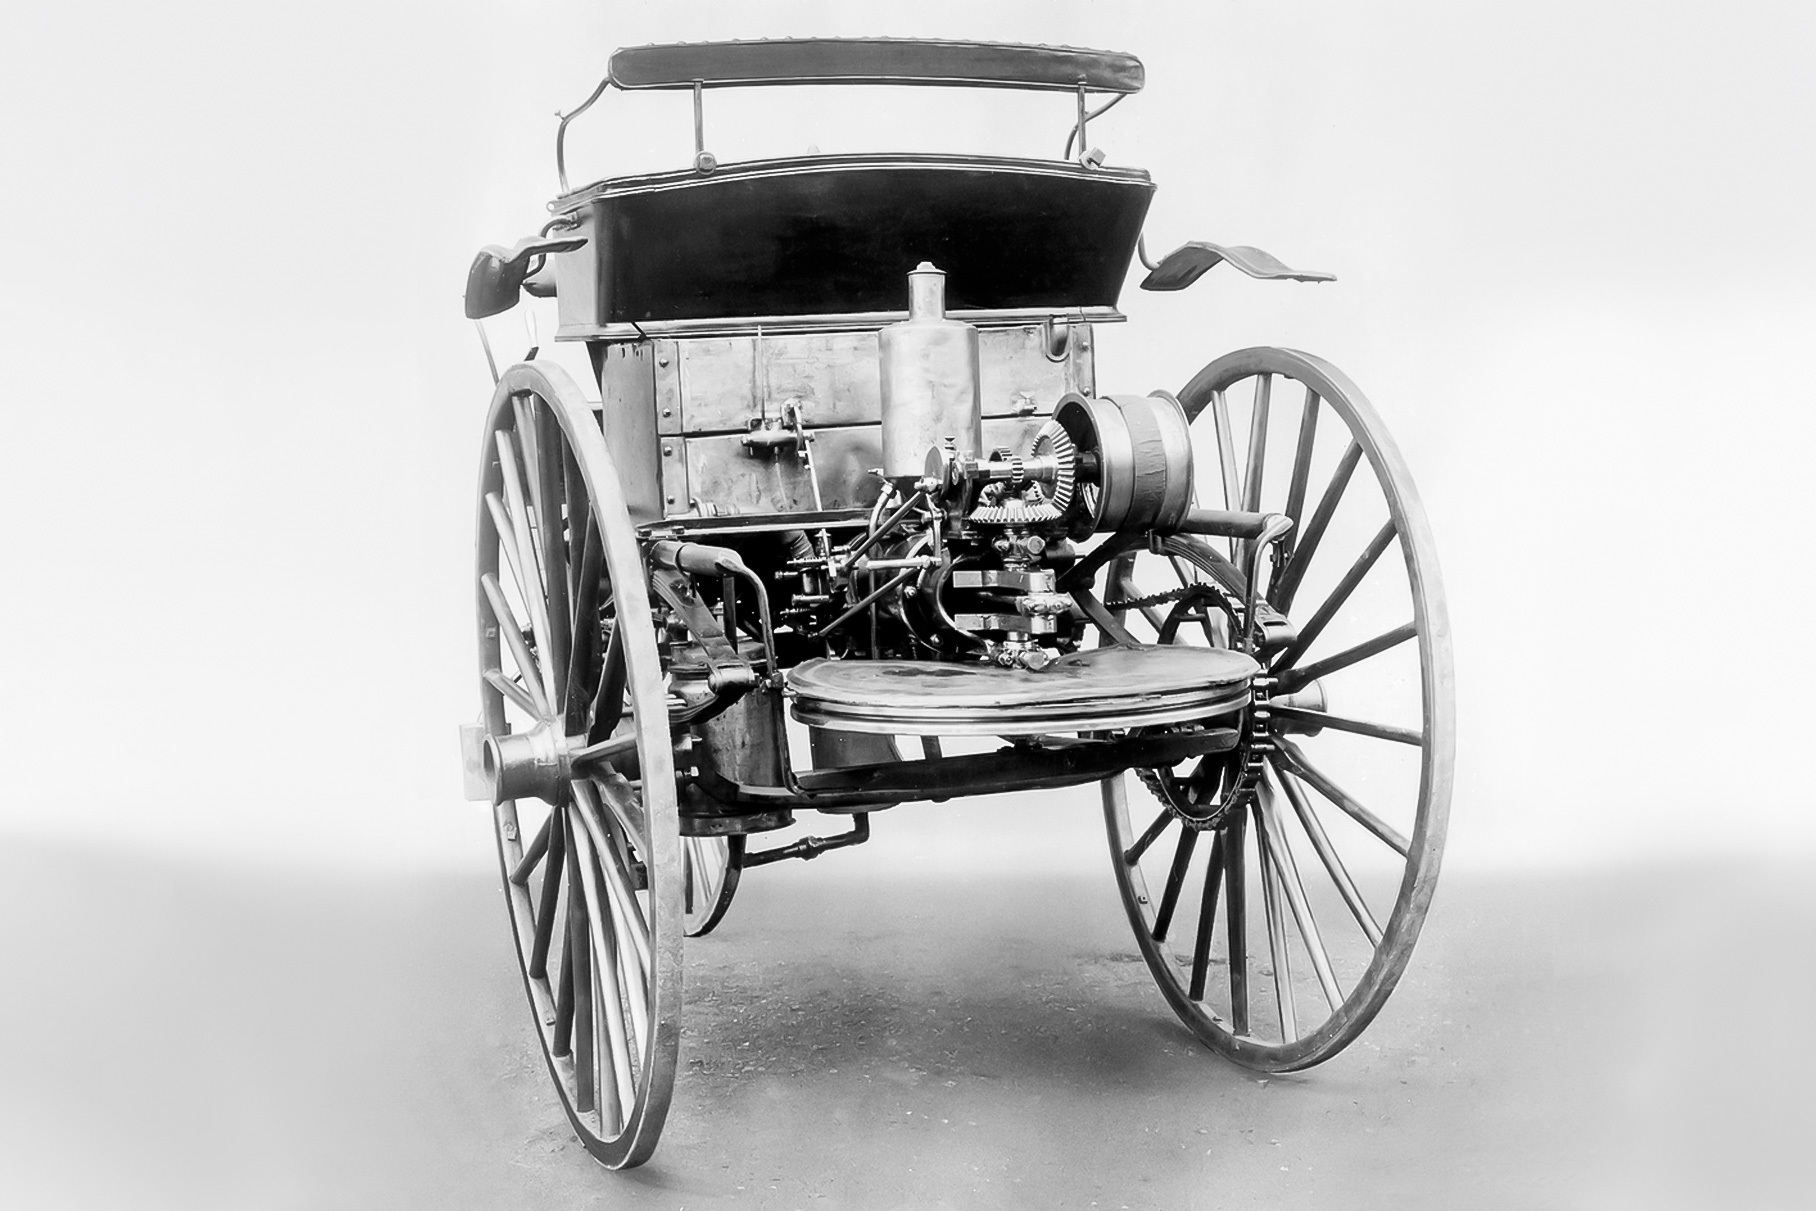 1 машина на свете. Первый Мерседес Бенц 1886. Автомобиль Benz Patent-Motorwagen.